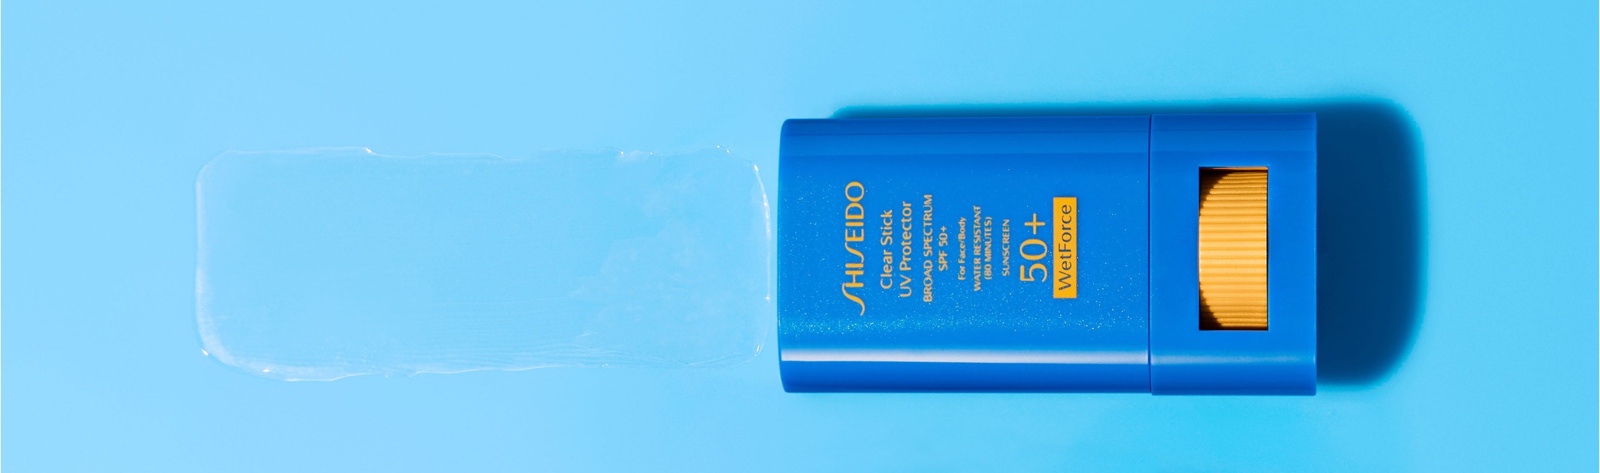 Shiseido clear stick SPF sunscreen